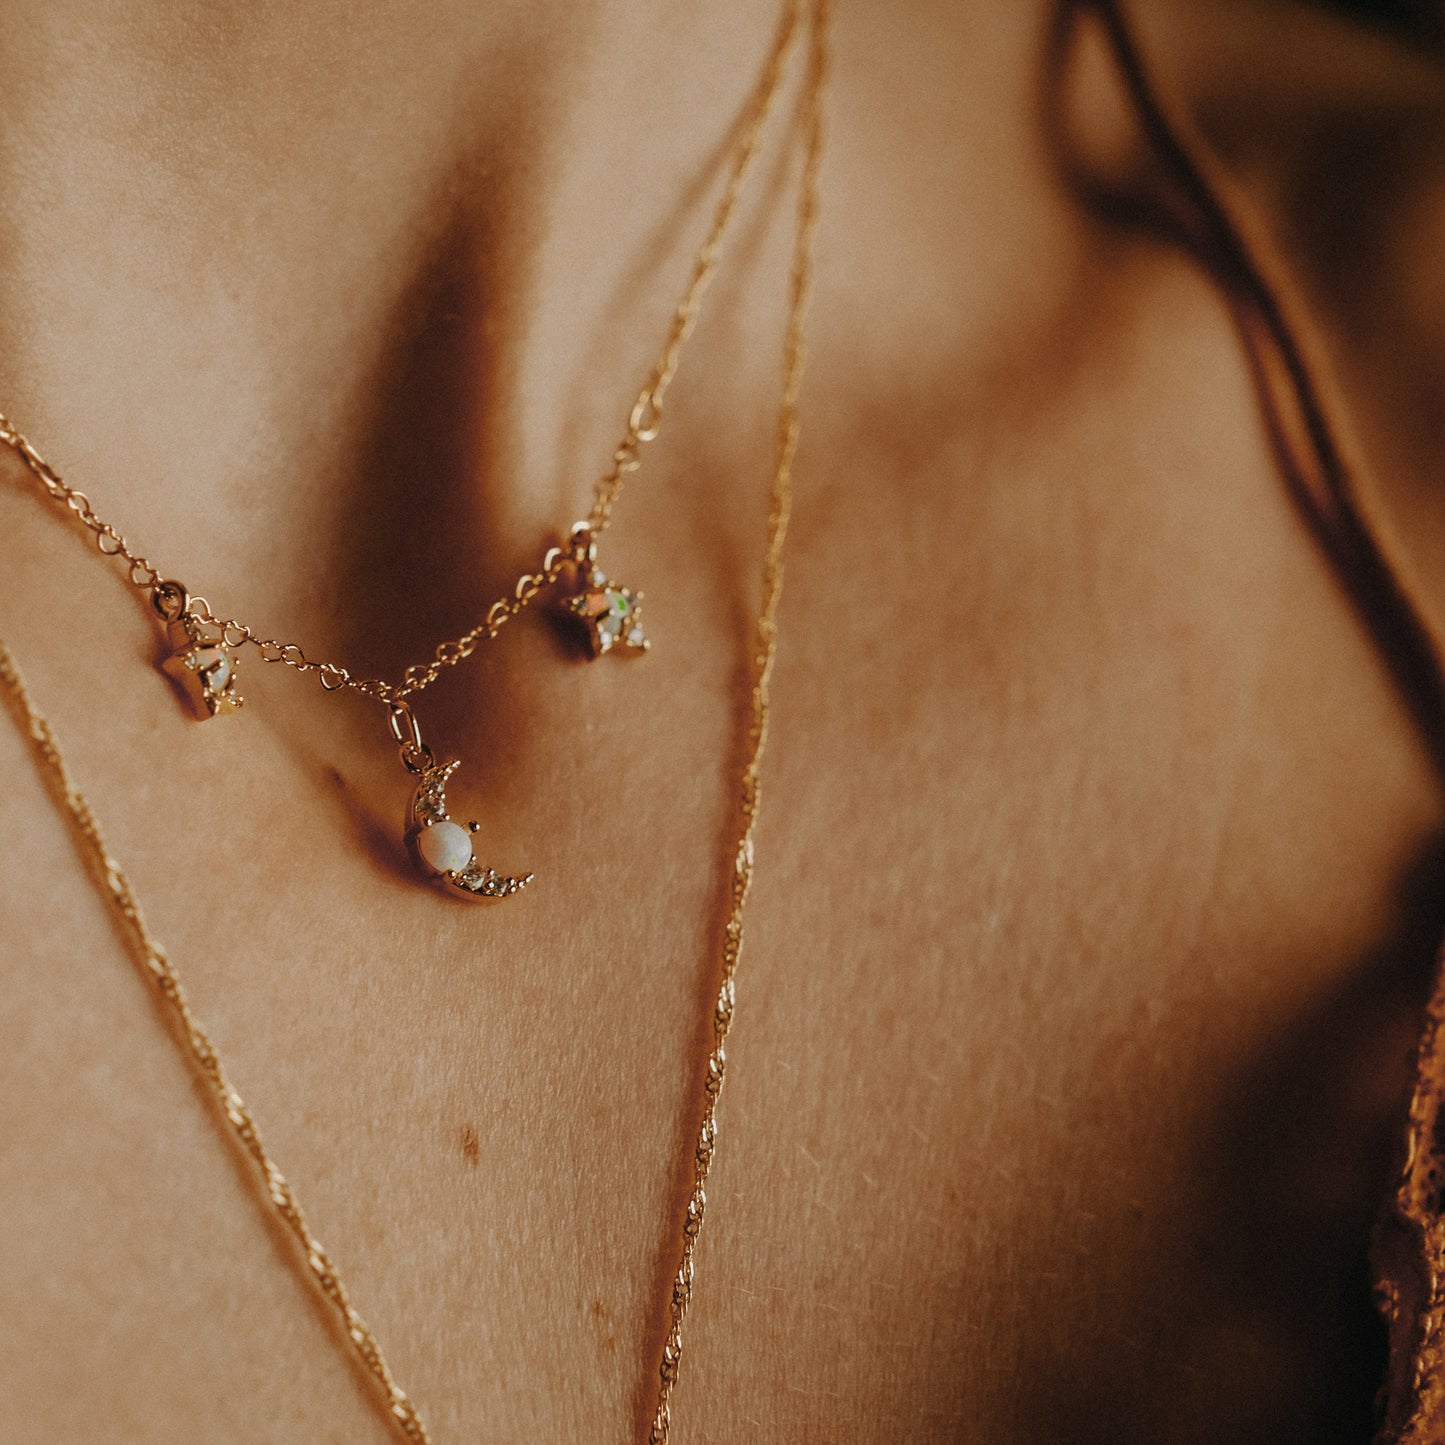 “Galatea” necklace